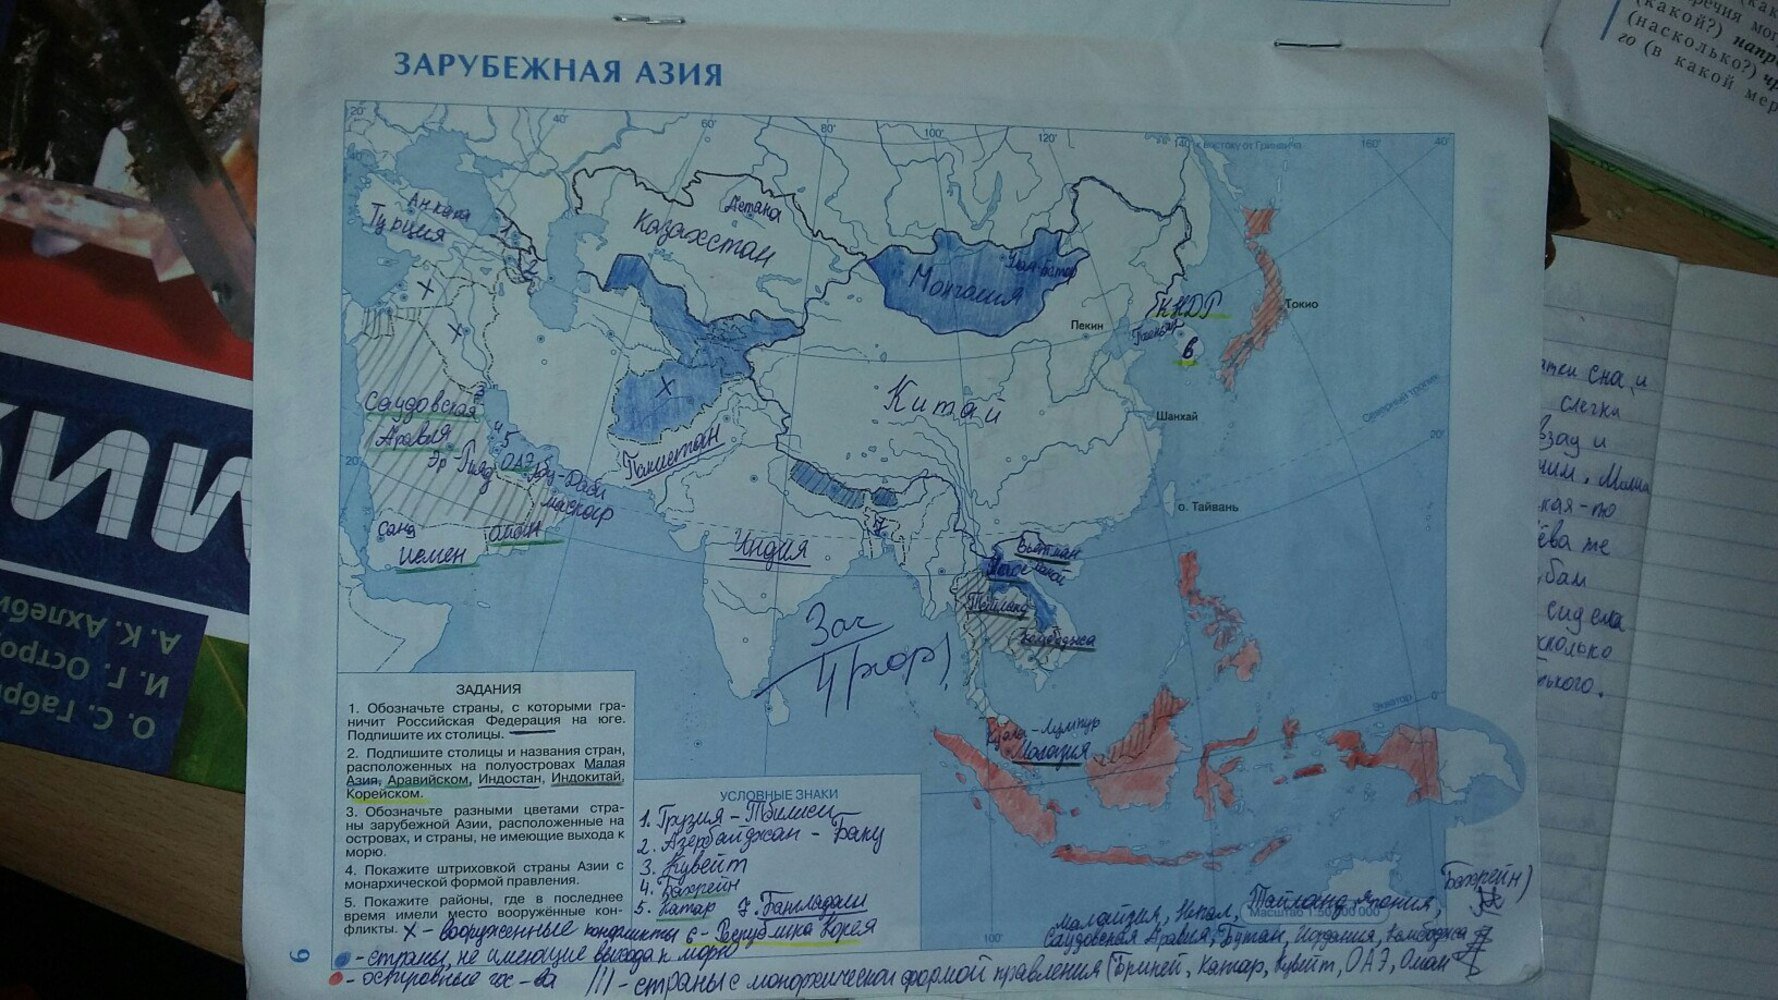 Гдз контурные карты по географии 10-11 класс зарубежная Азия